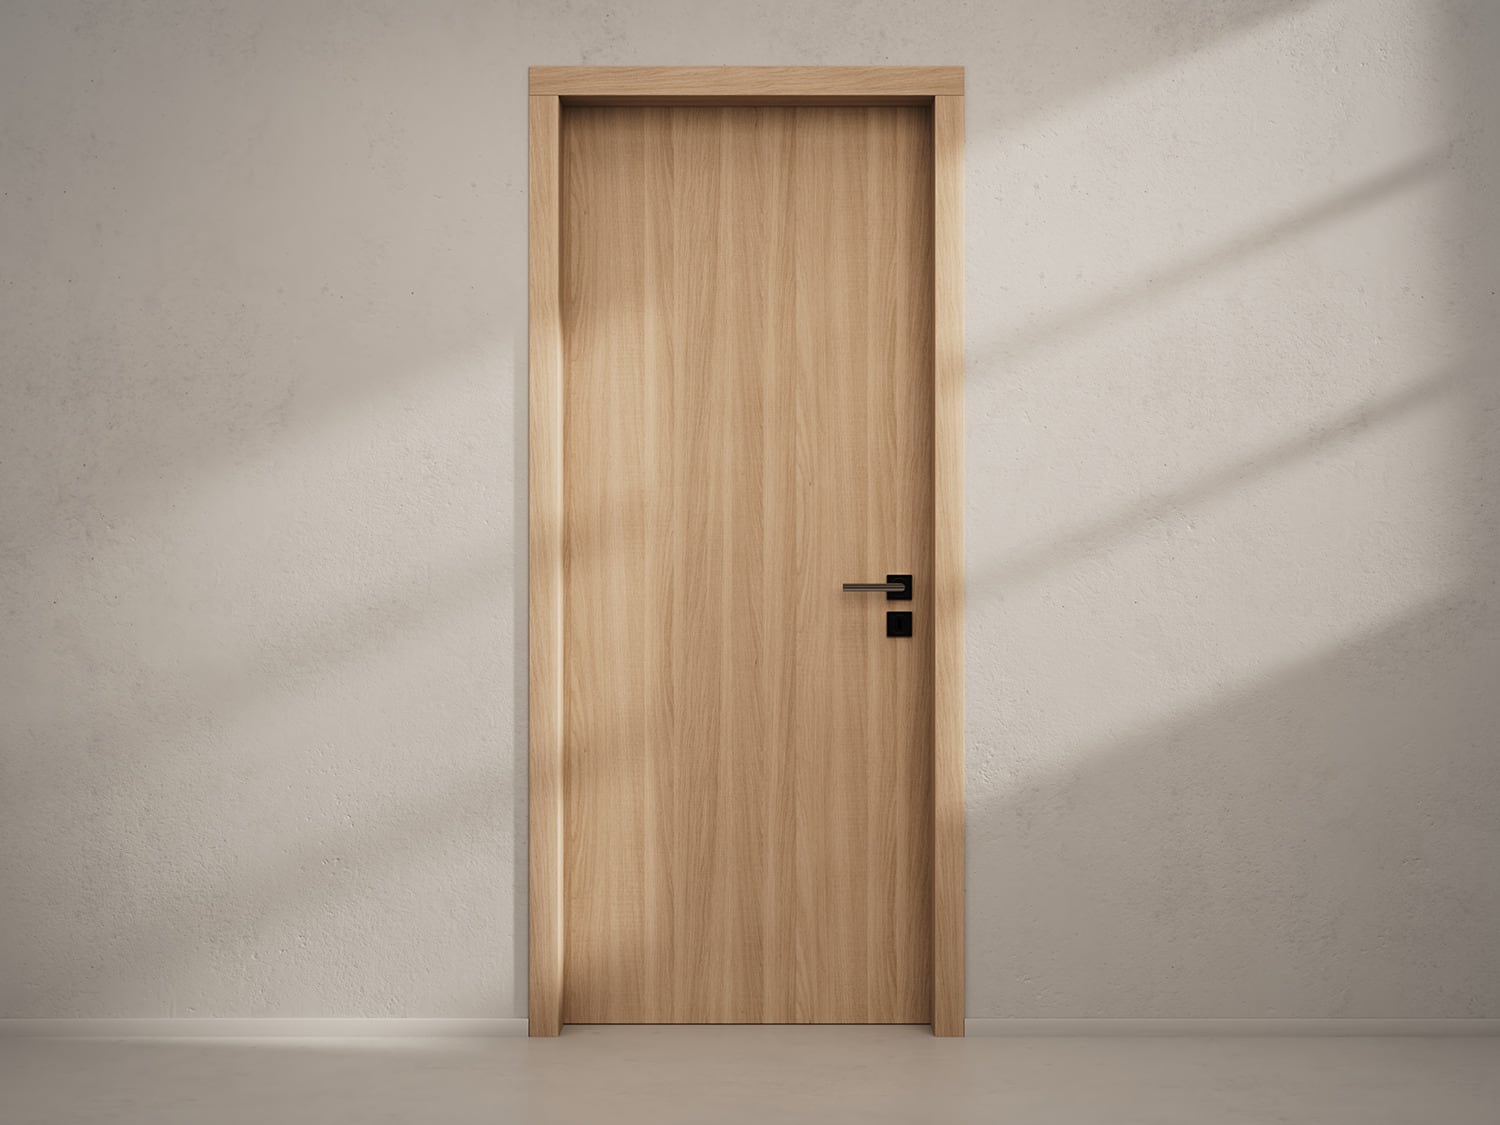 Door with material